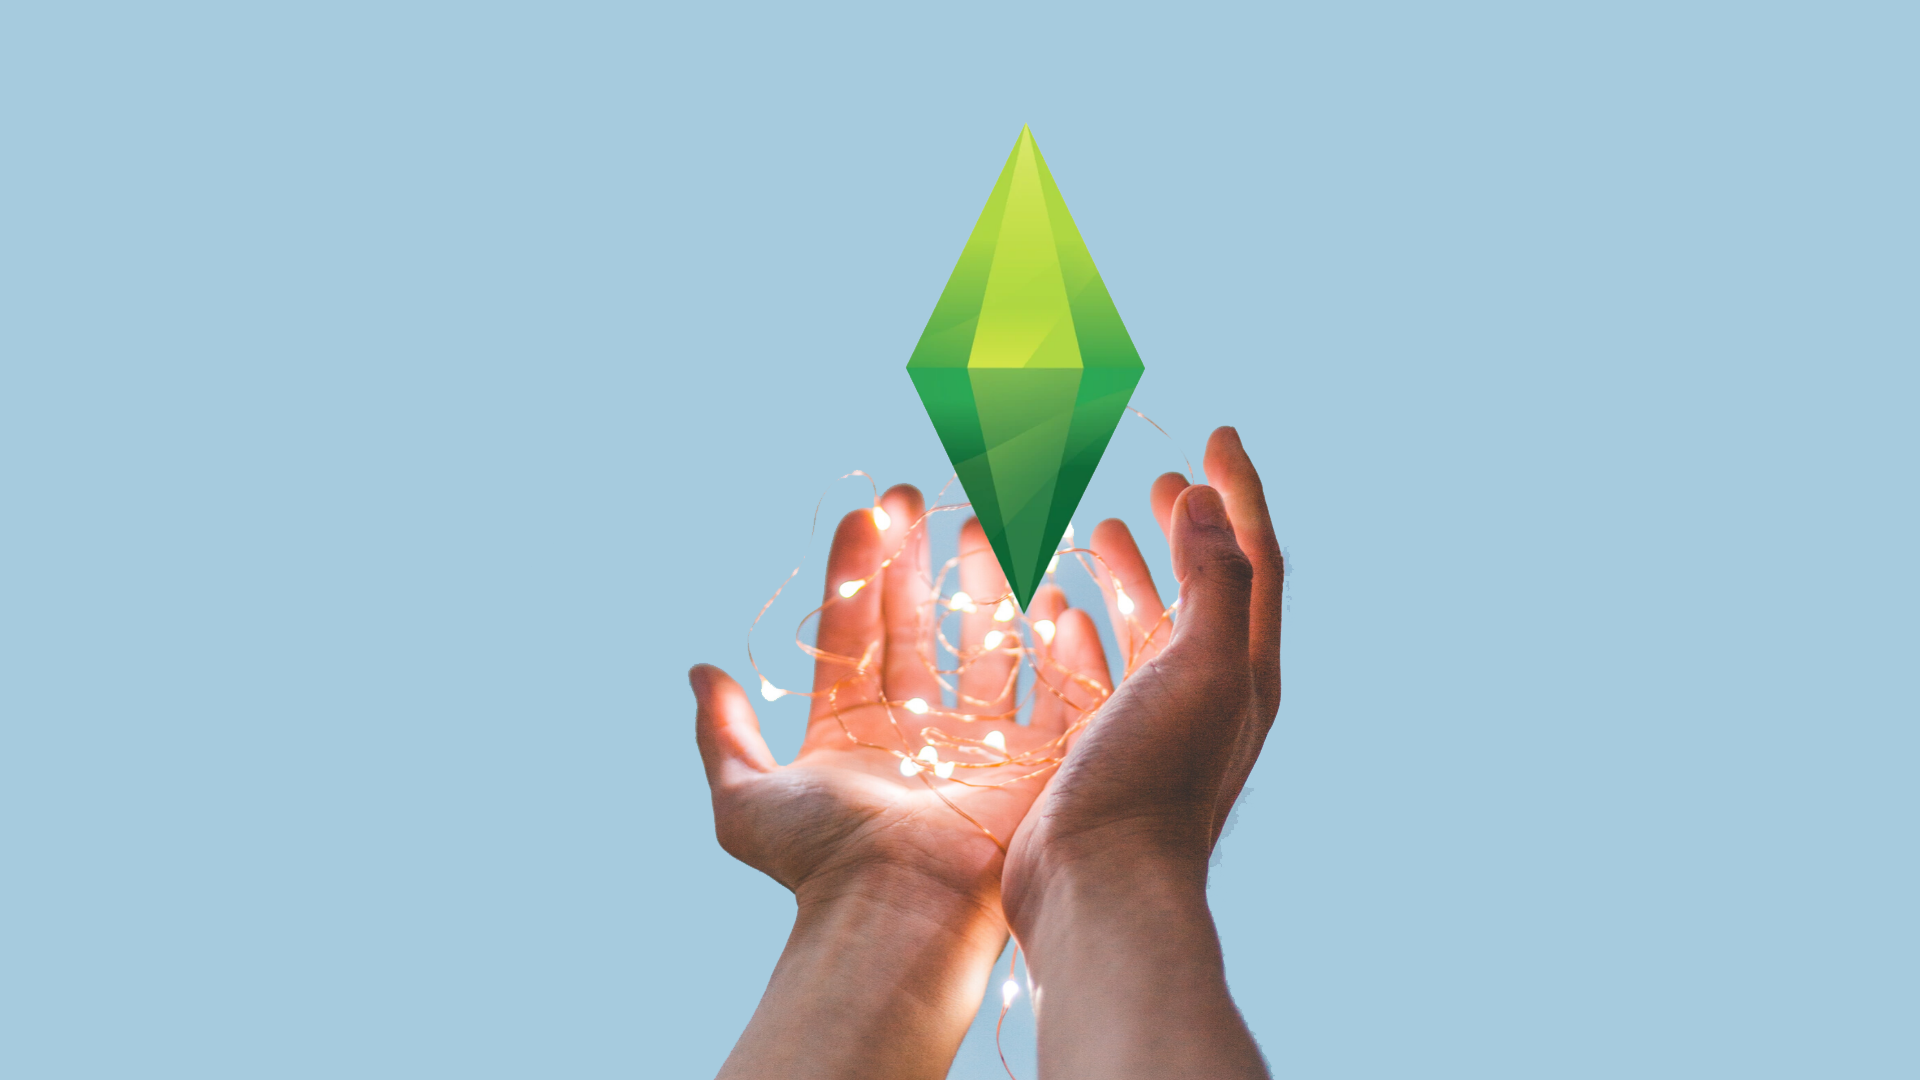 The Sims 4: tudo sobre o jogo de simulação